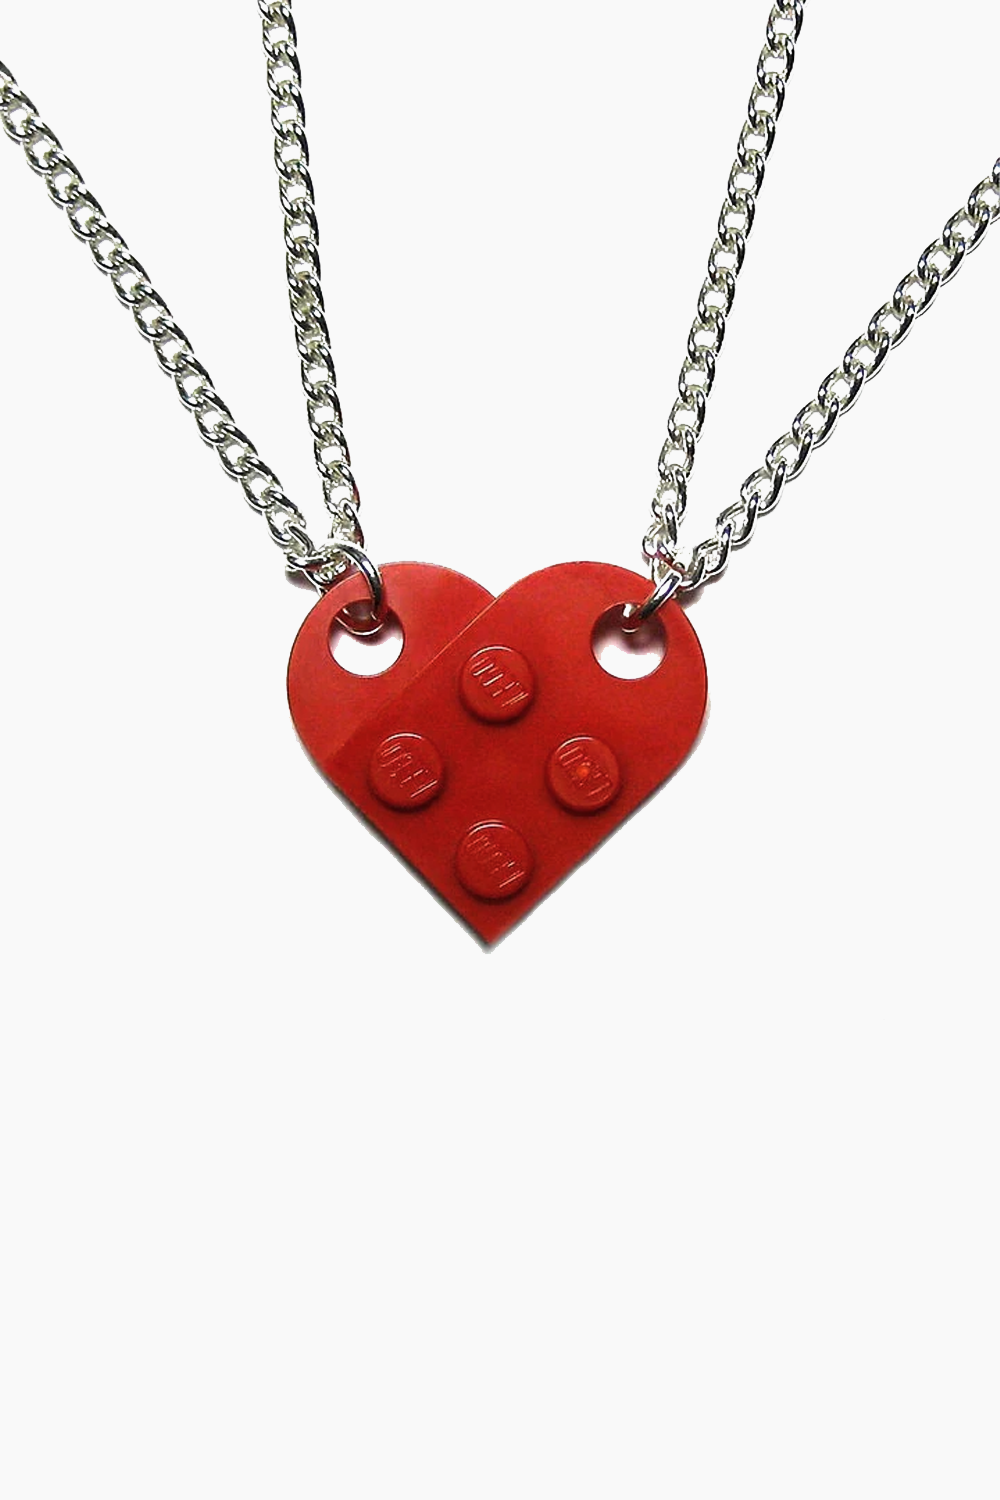 LEGO couple necklace